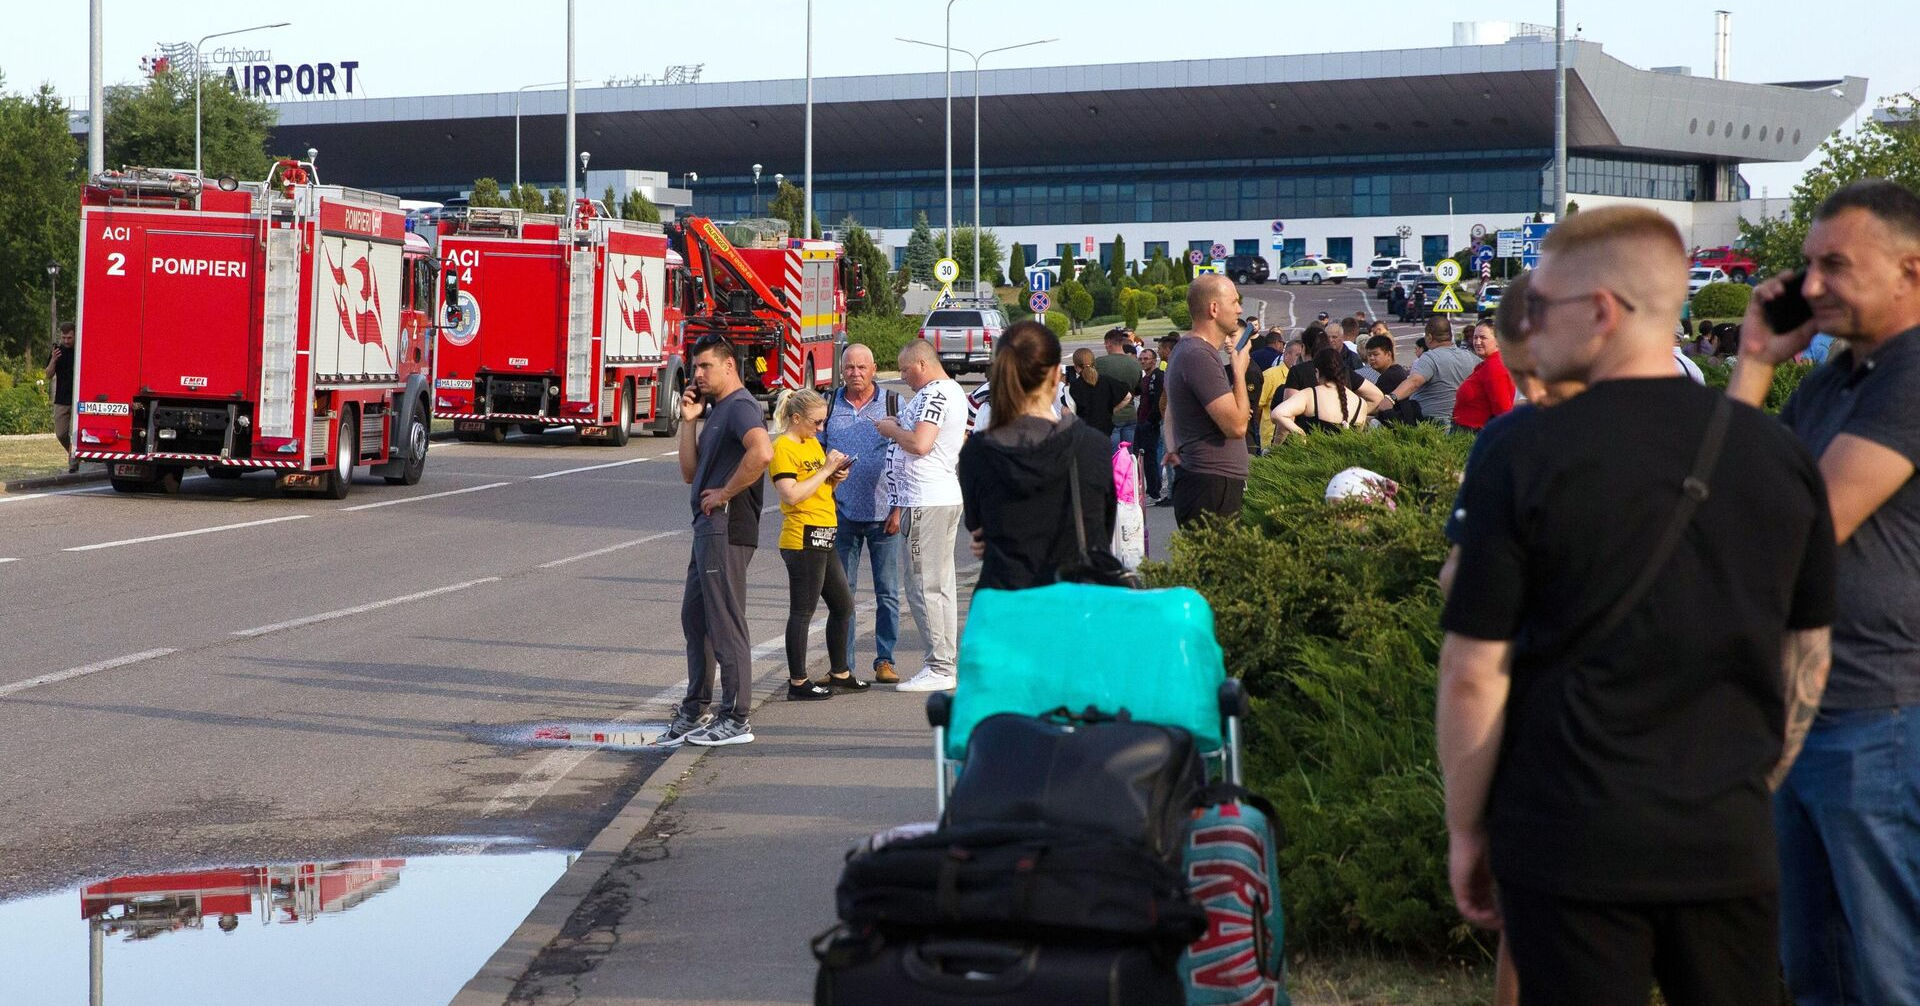 Отчет об атаке в аэропорту не представили: его обещали обнародовать 31 июля.